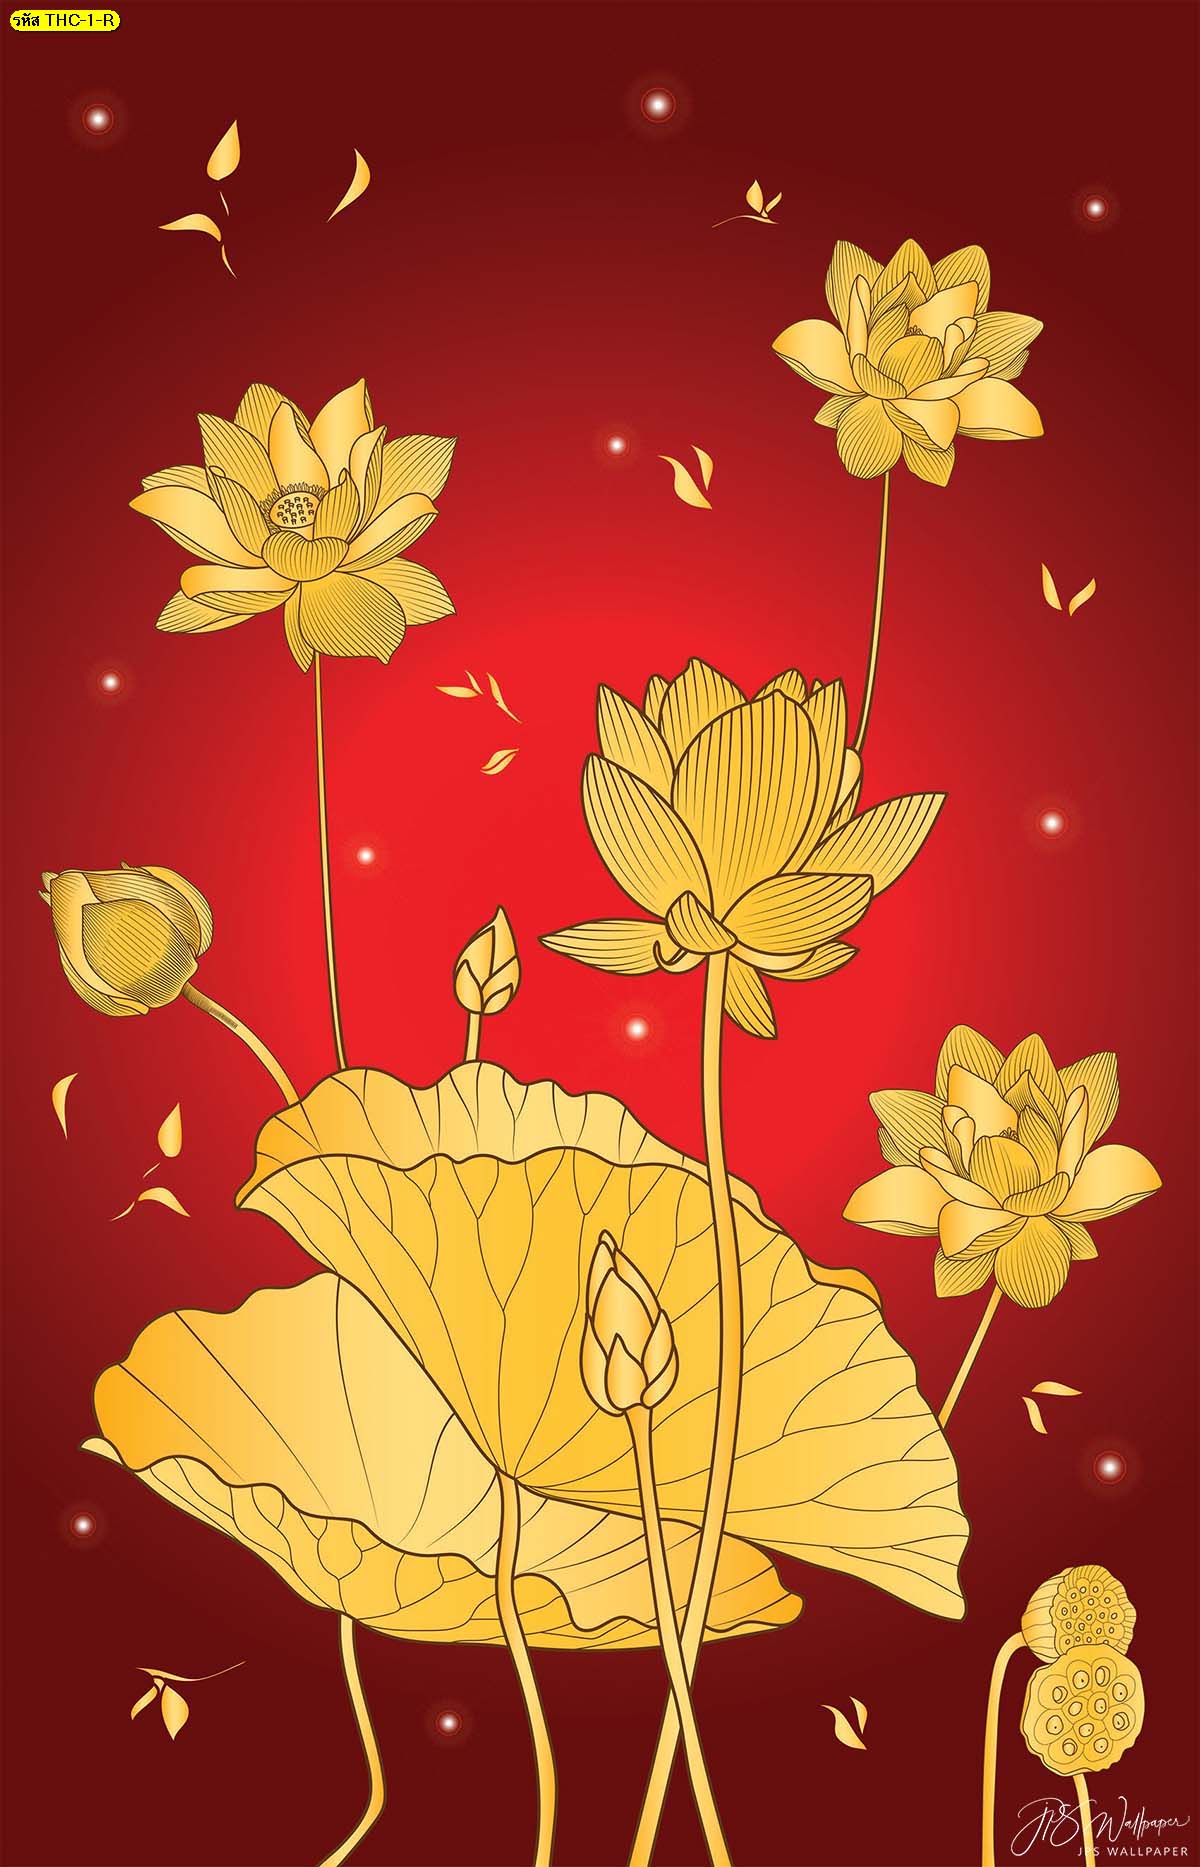 วอลเปเปอร์ลายดอกบัวทองพื้นสีแดง รูปดอกบัวบาน ฉากหลังห้องพระสวยๆ